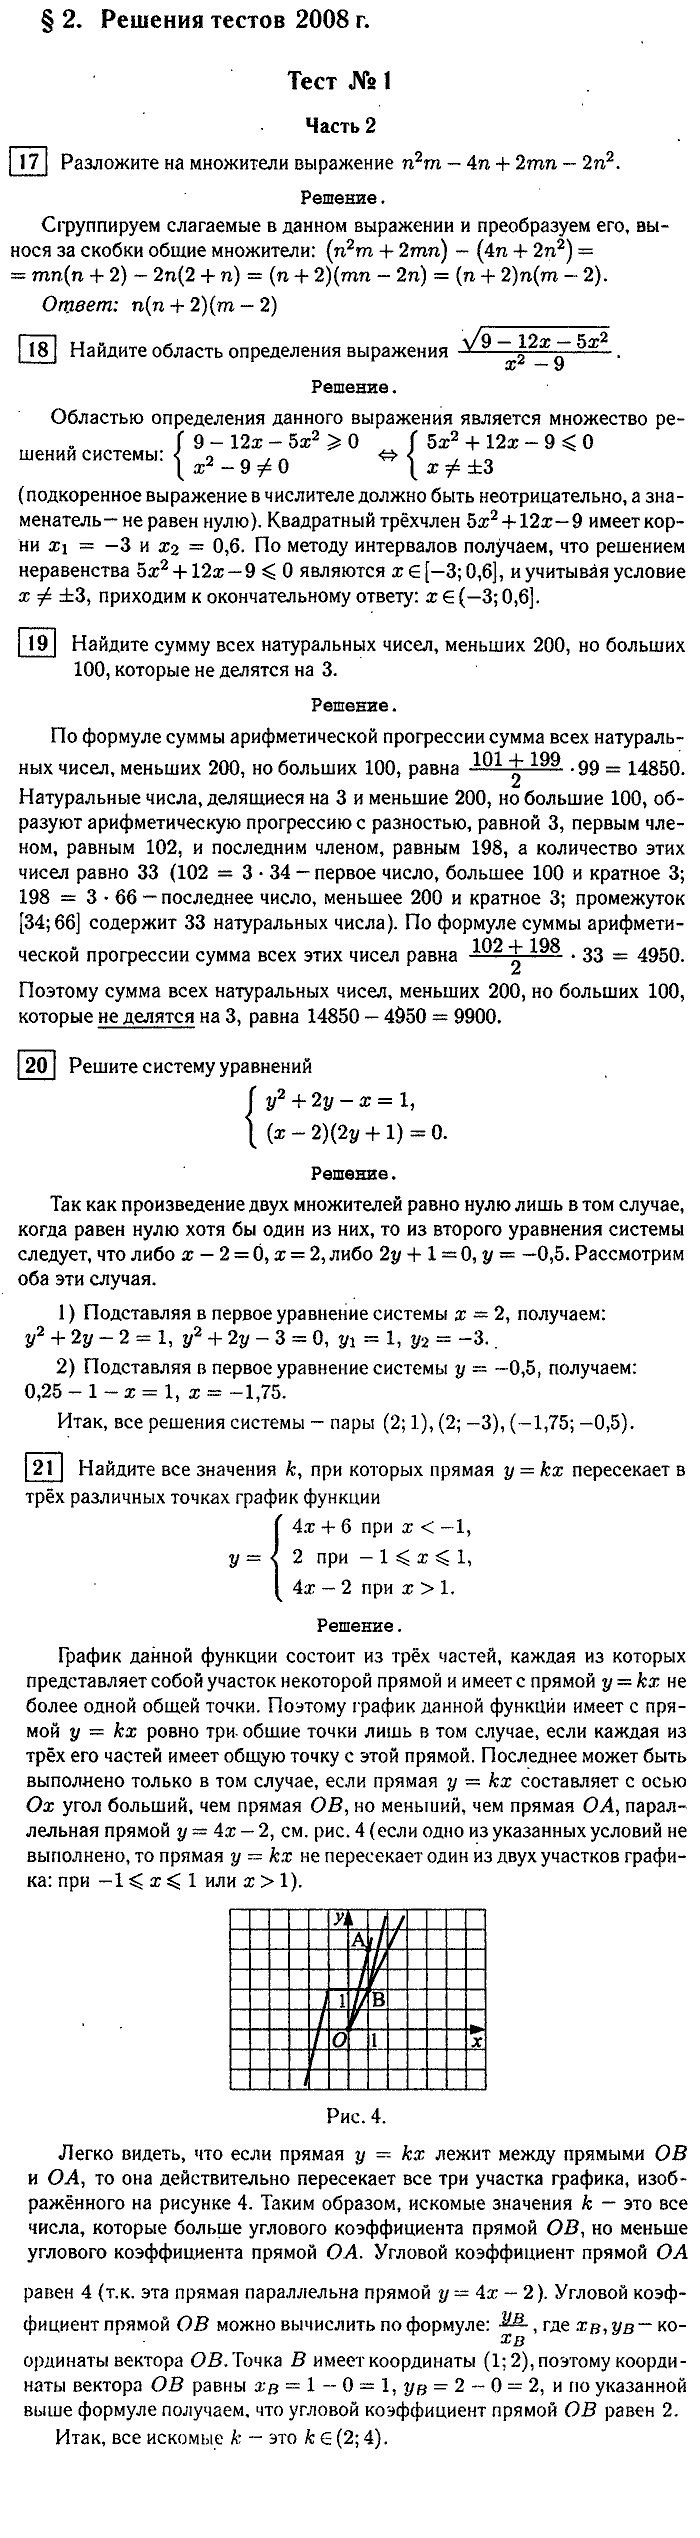 Итоговая аттестация, 9 класс, Мальцева, 2010, §2. Решение тестов 2008 г. Задание: Тест №1